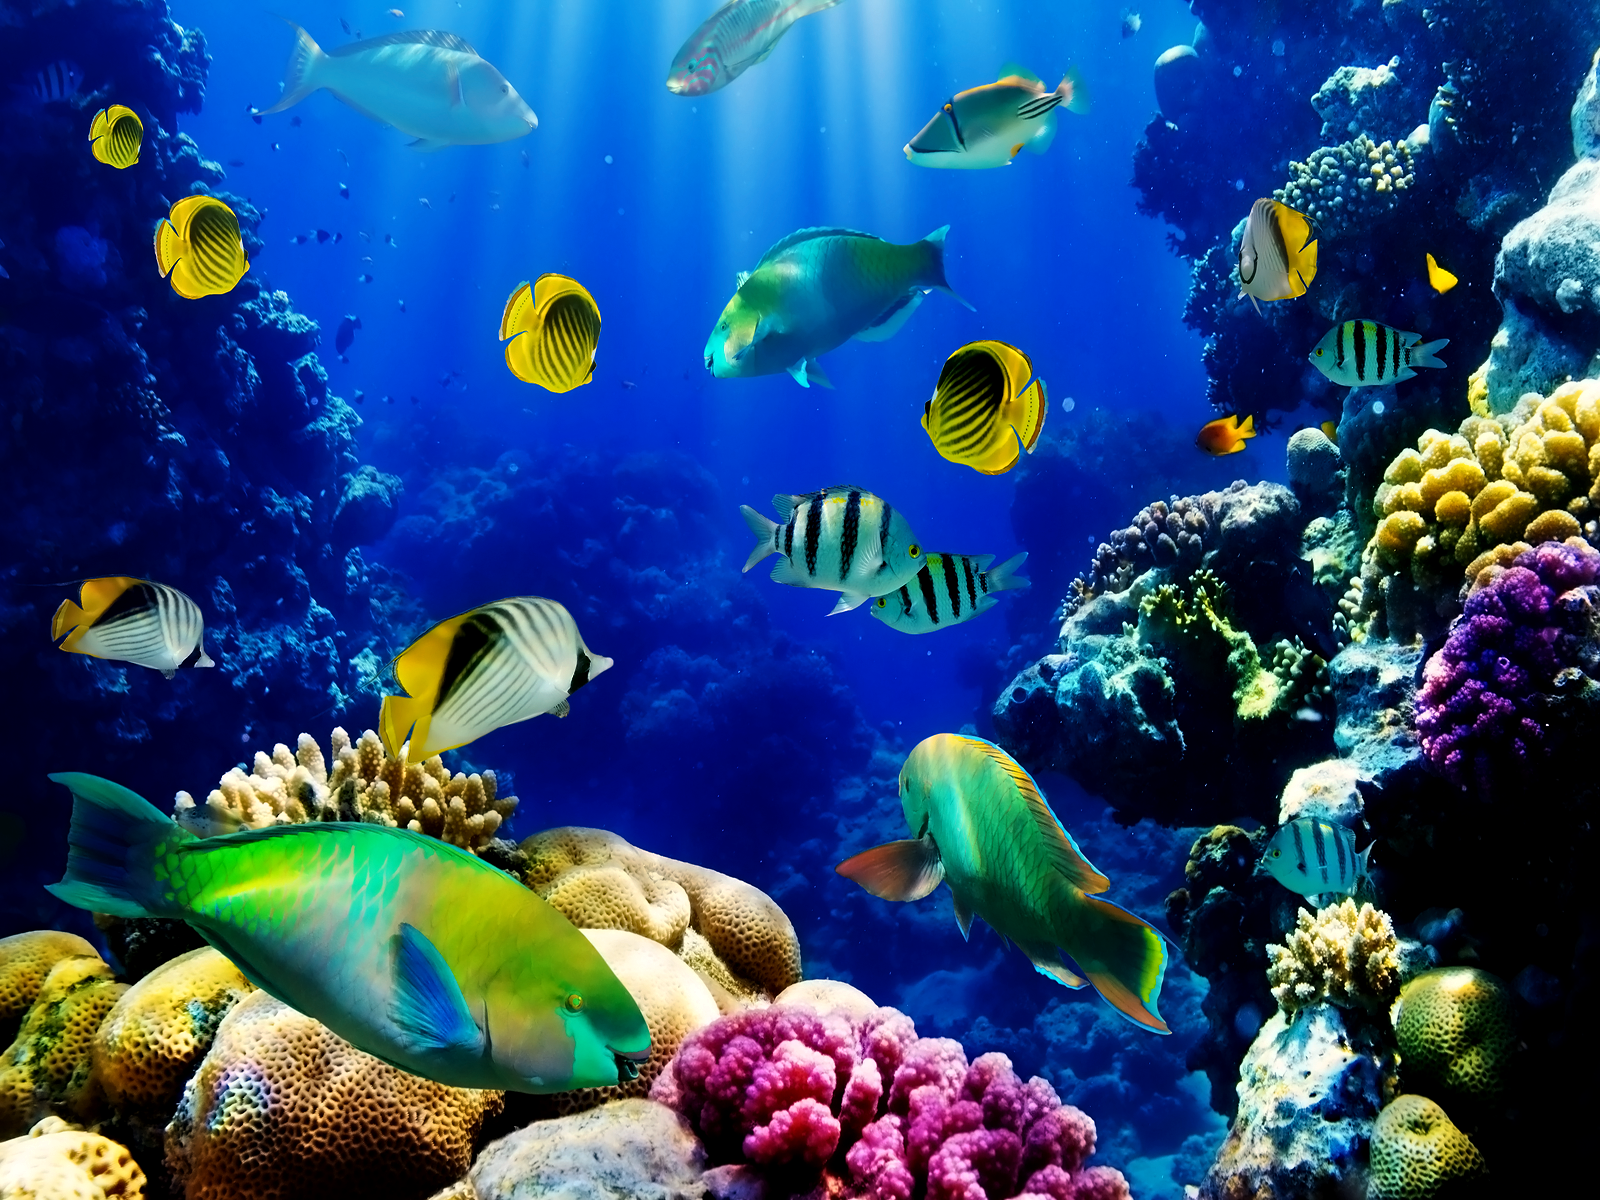 Free Download: 3D Live Fish Tank Wallpaper: Hãy tận hưởng không khí trong lành và yên bình với bộ sưu tập hình nền 3D Aquarium đẹp mắt. Bạn được trải nghiệm những con cá đáng yêu và mầu sắc đa dạng trong bể cá sống động giữa chúng ta. Tất cả đều miễn phí để tải về và trang trí cho màn hình điện thoại của bạn.